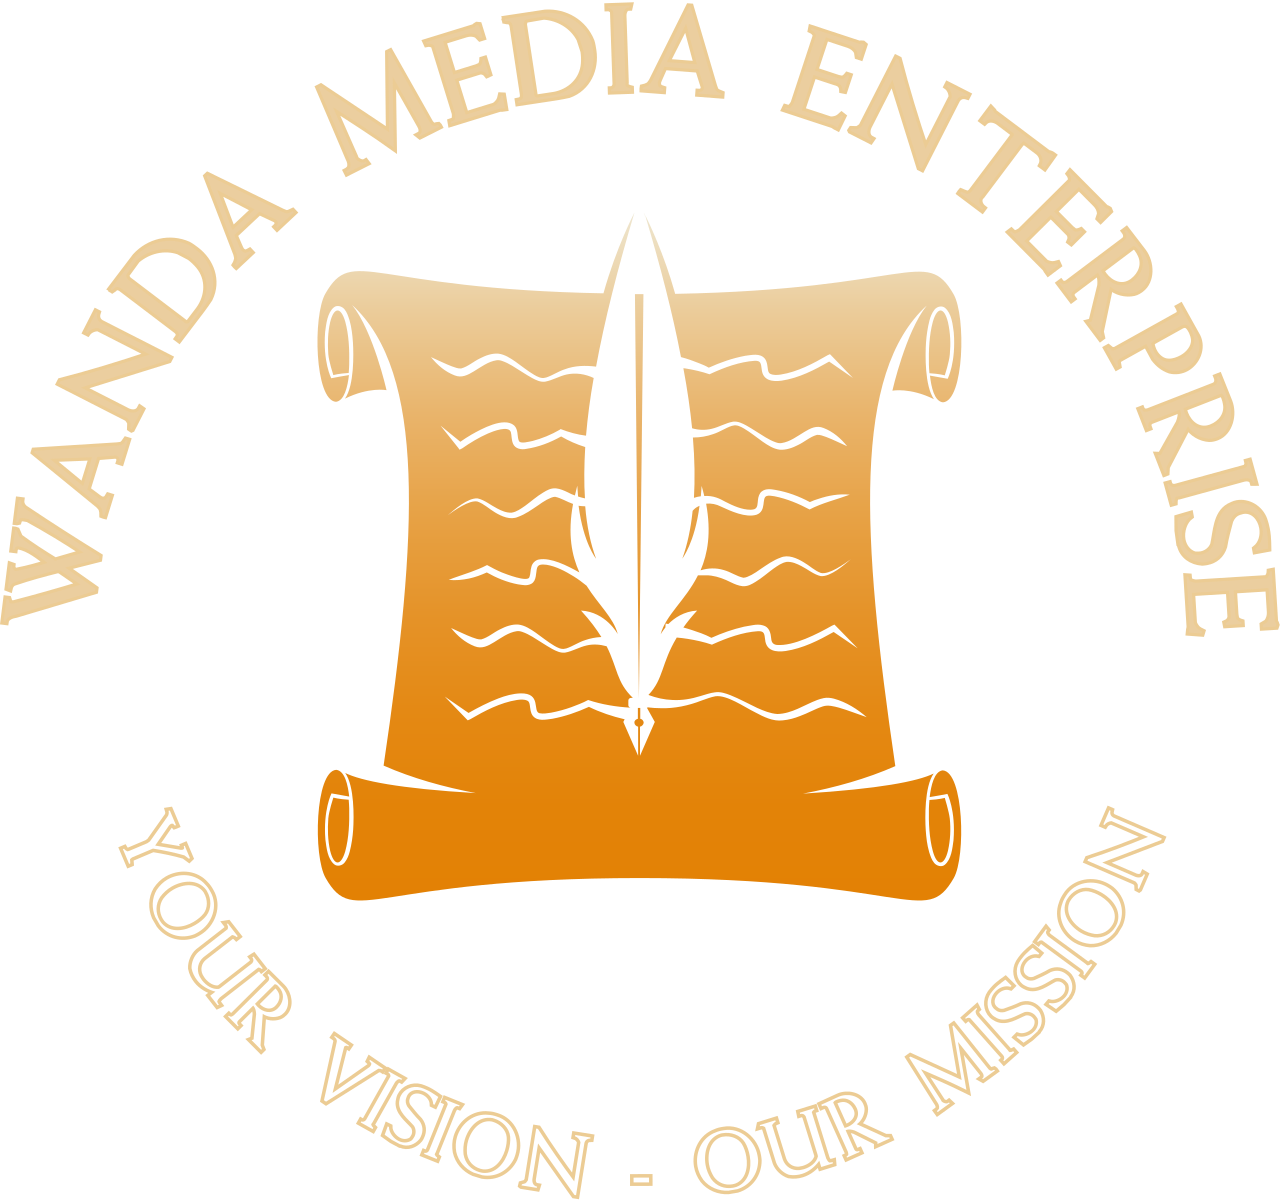 WANDA MEDIA ENTERPRISE's logo